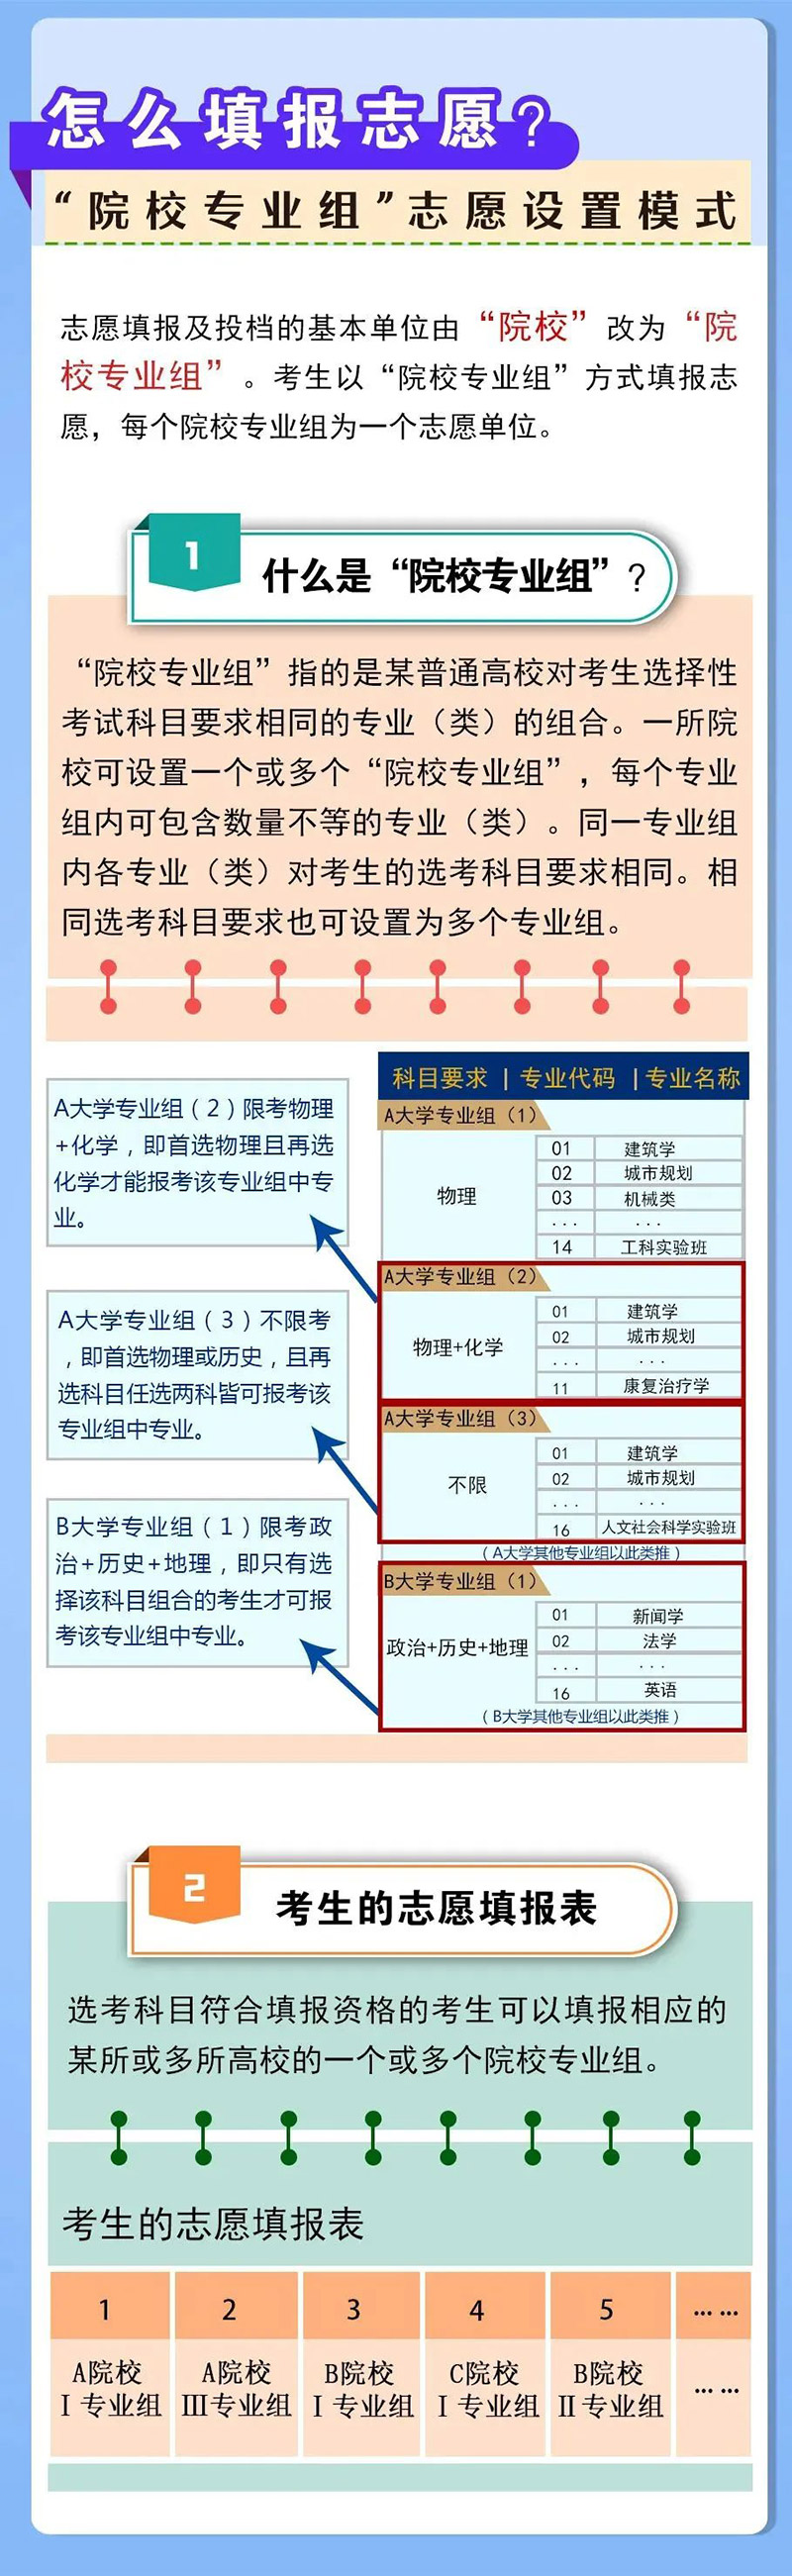 河南省高考综合改革方案-怎么填报志愿